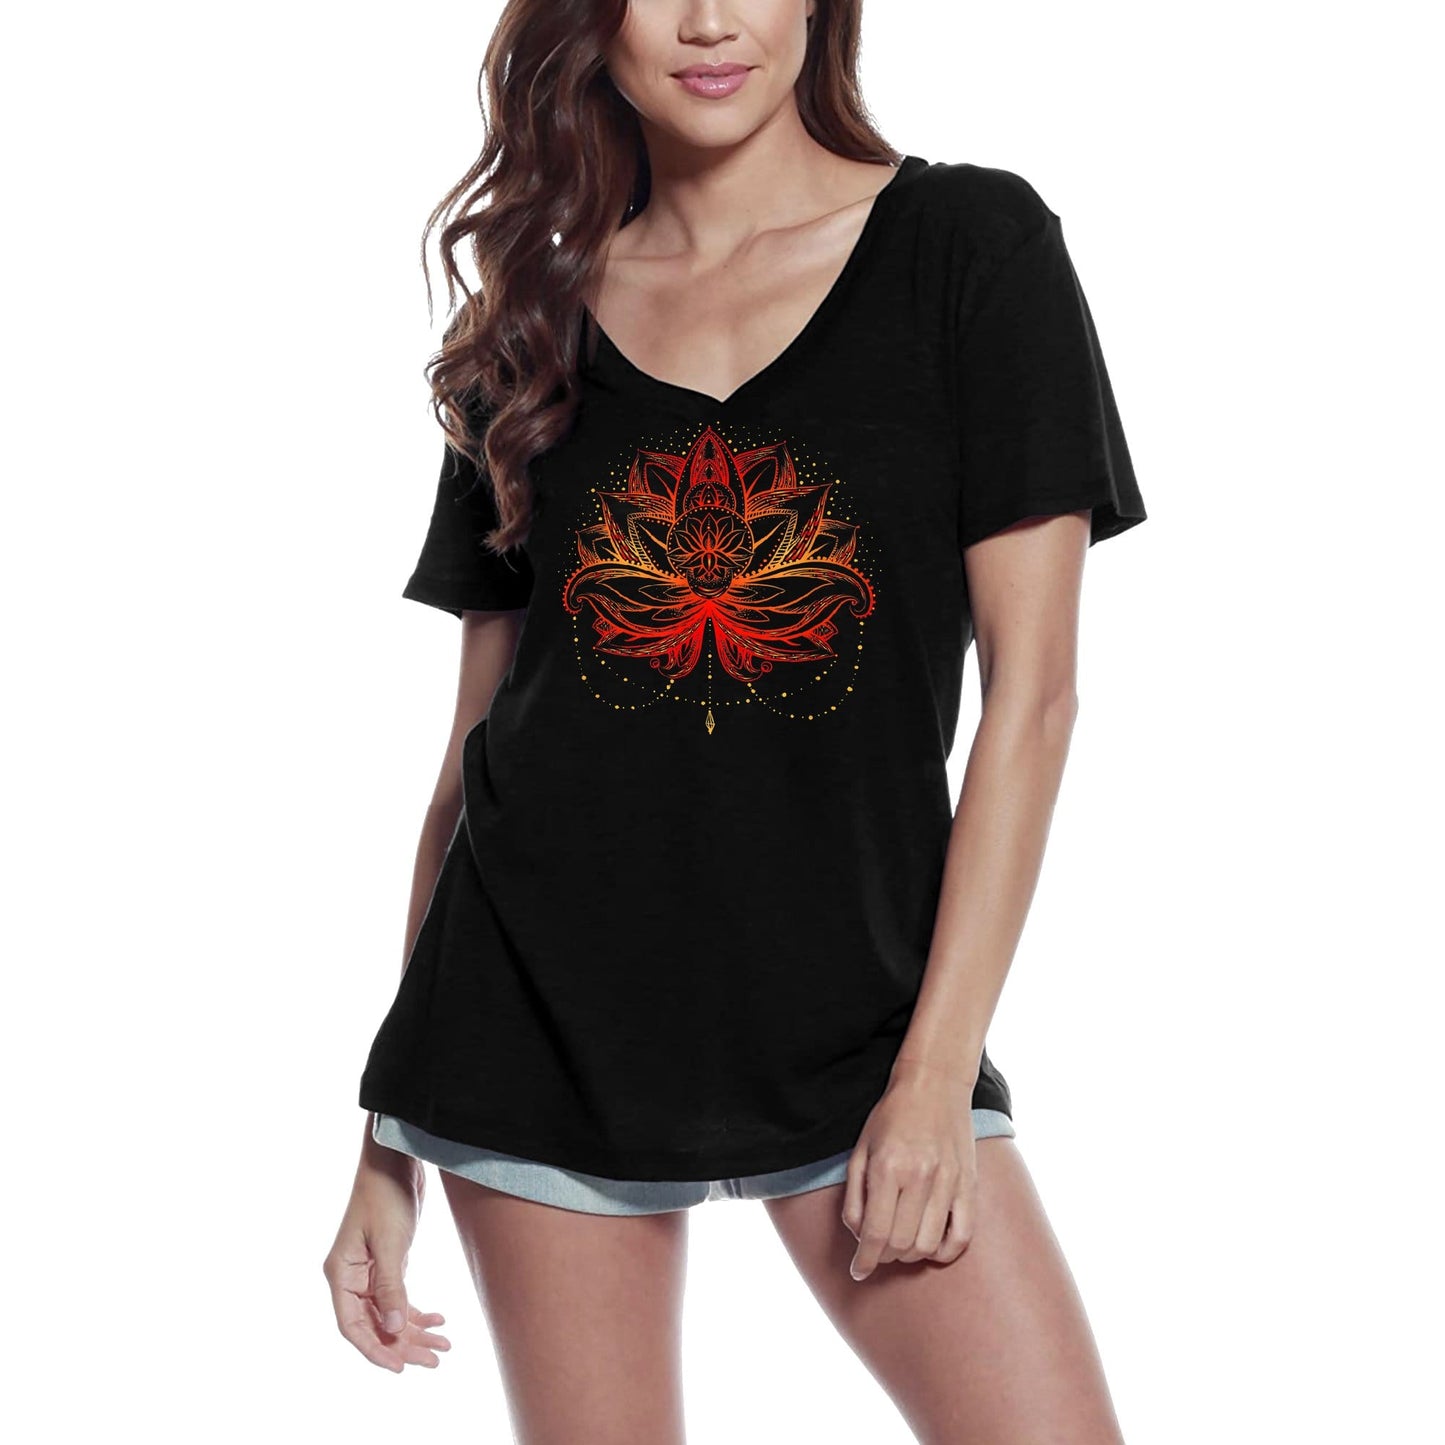 ULTRABASIC Women's V-Neck T-Shirt Lotus Flower Fire - Spiritual Meditation Yoga Gift Tee Shirt